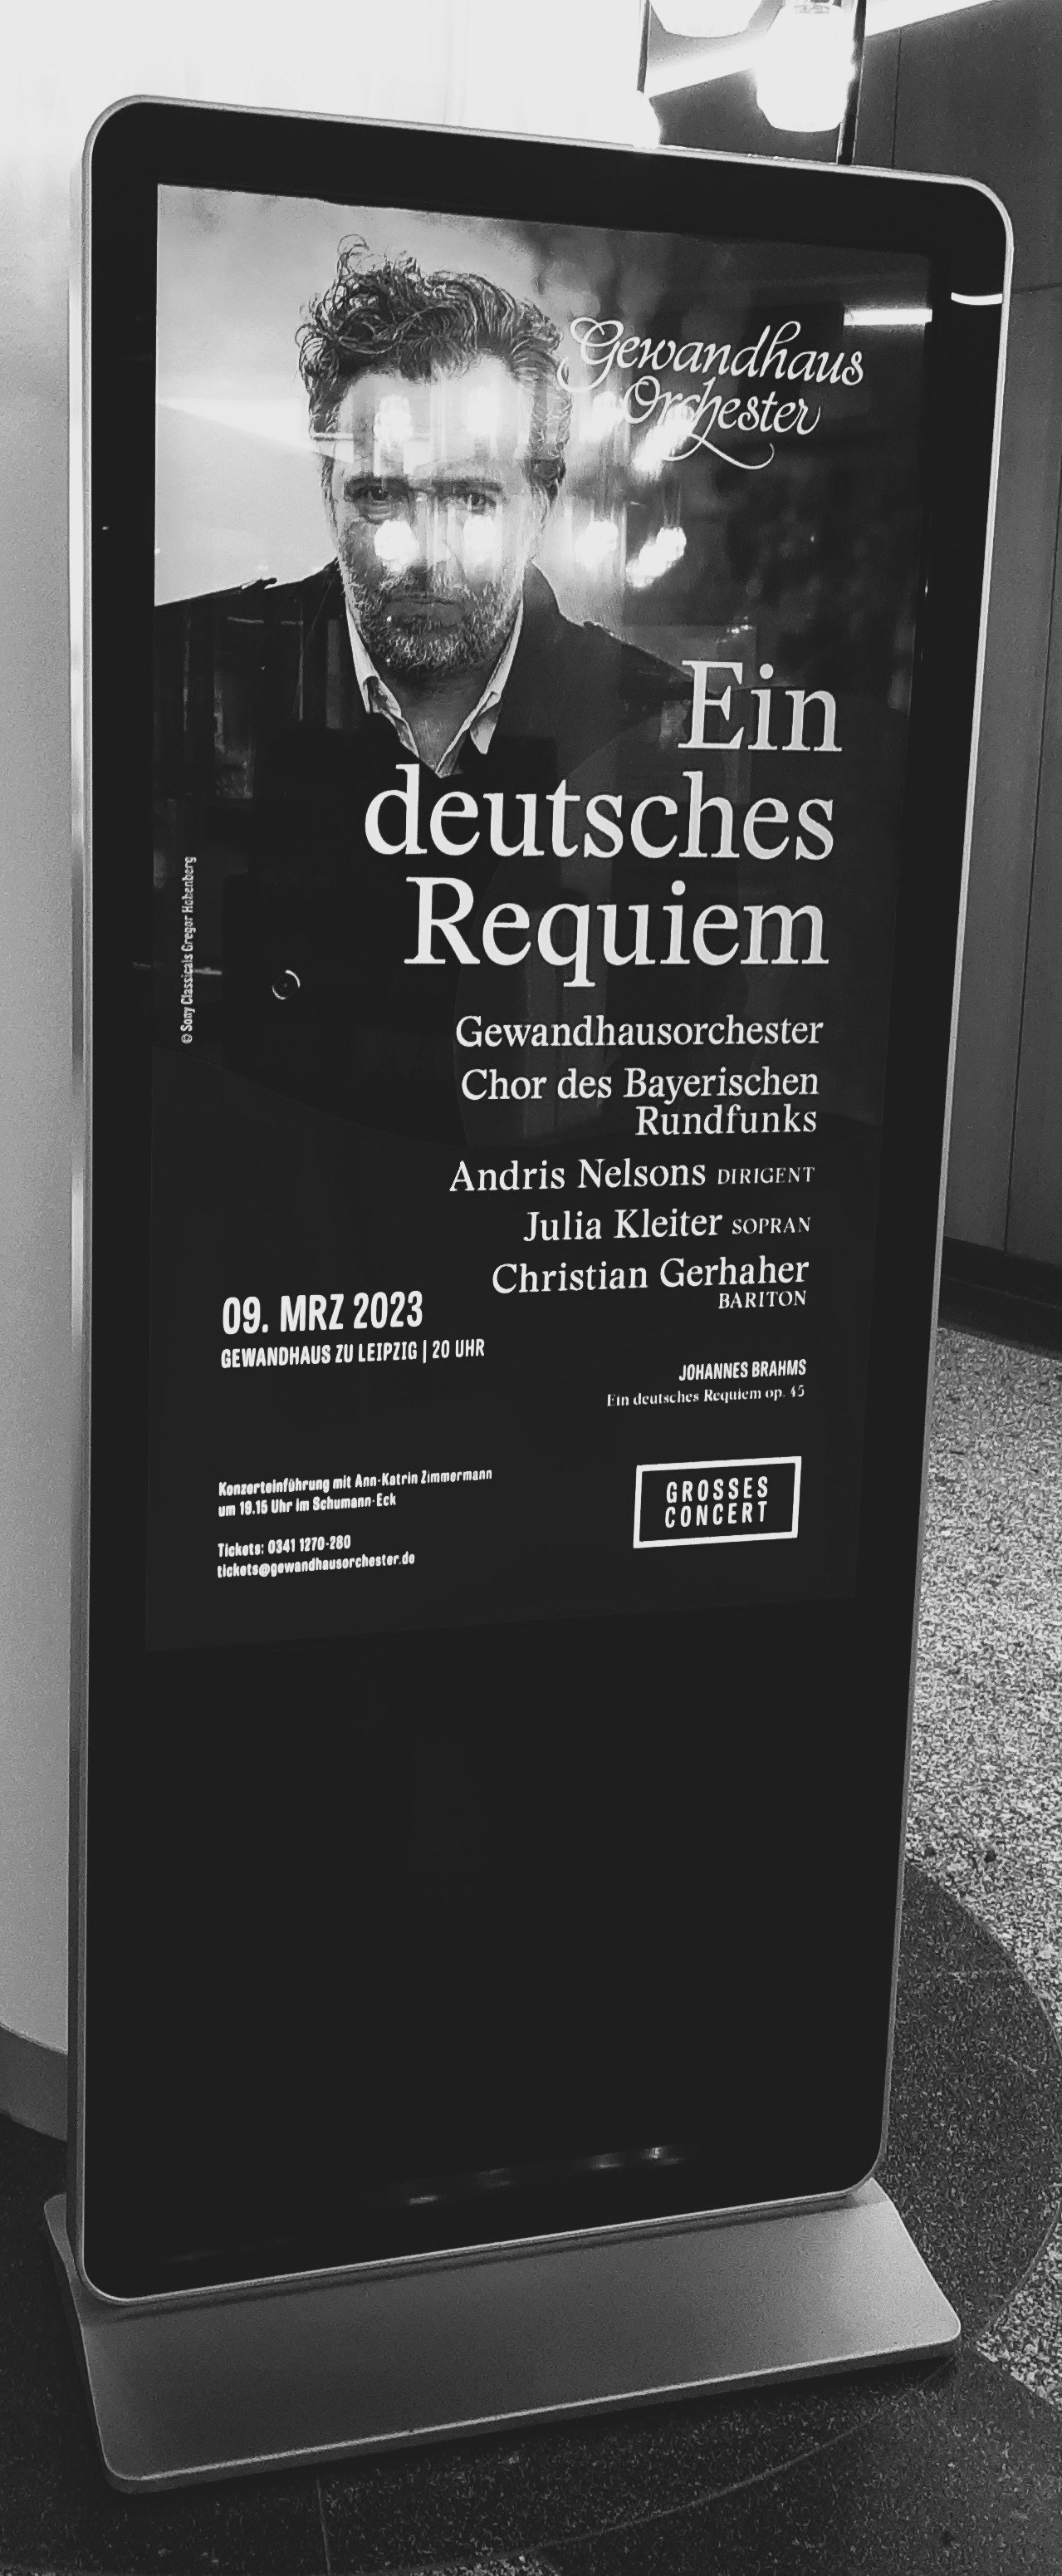 2023.03 Brahms, Ein deutsches Requiem, Chor des Bayerischen Rundfunks, Gewandhaus Orchester, Kleiter, Gerhaher, Nelsons, Gewandhaus, Leipzig, Plakat sw